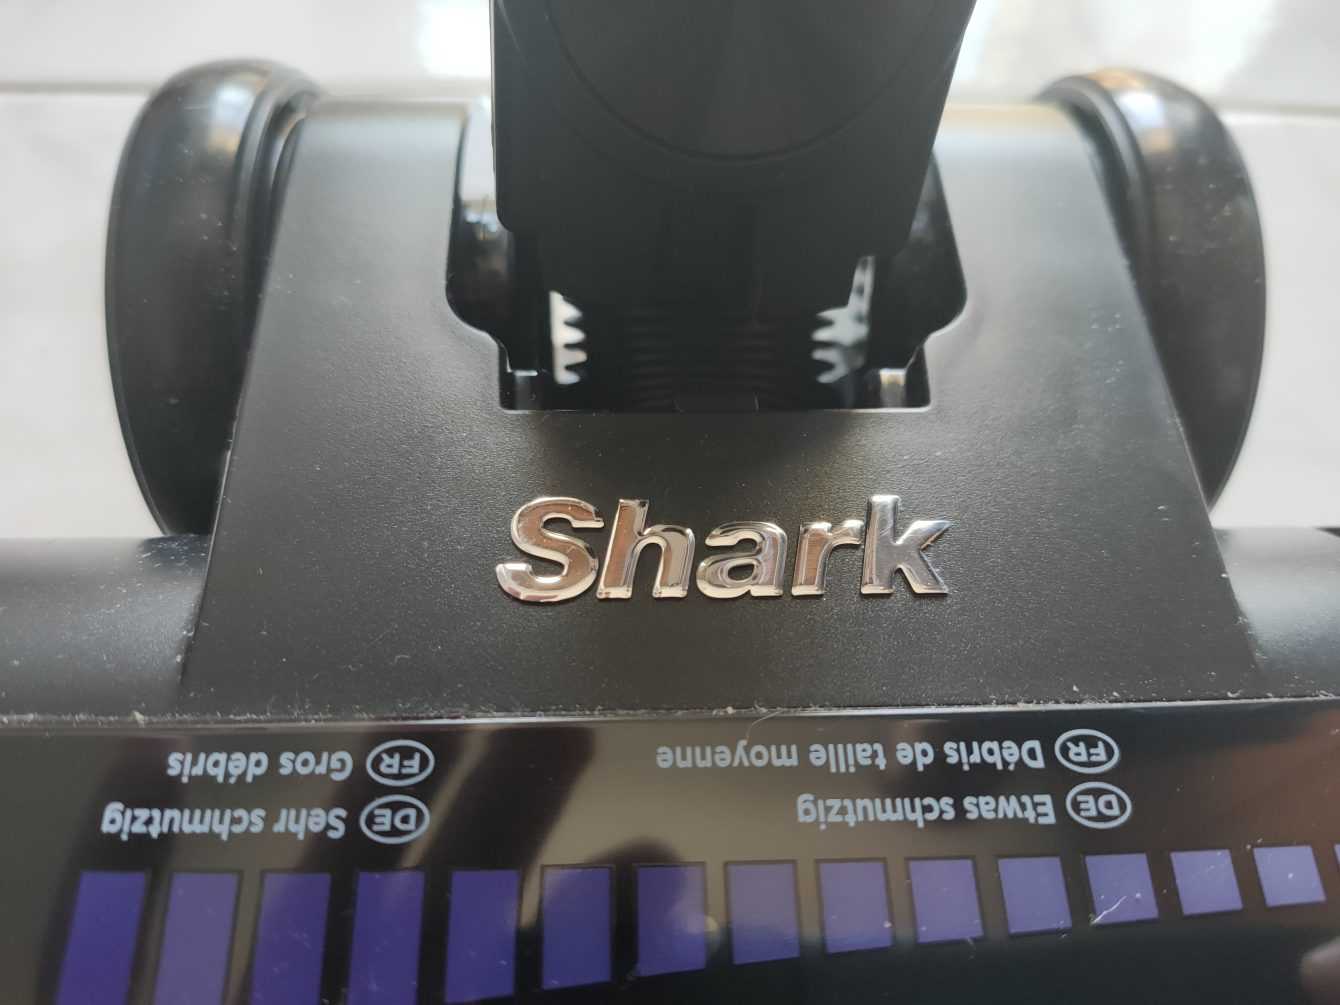 Recensione Shark Stratos: aspirapolvere senza filo con Pet Kit